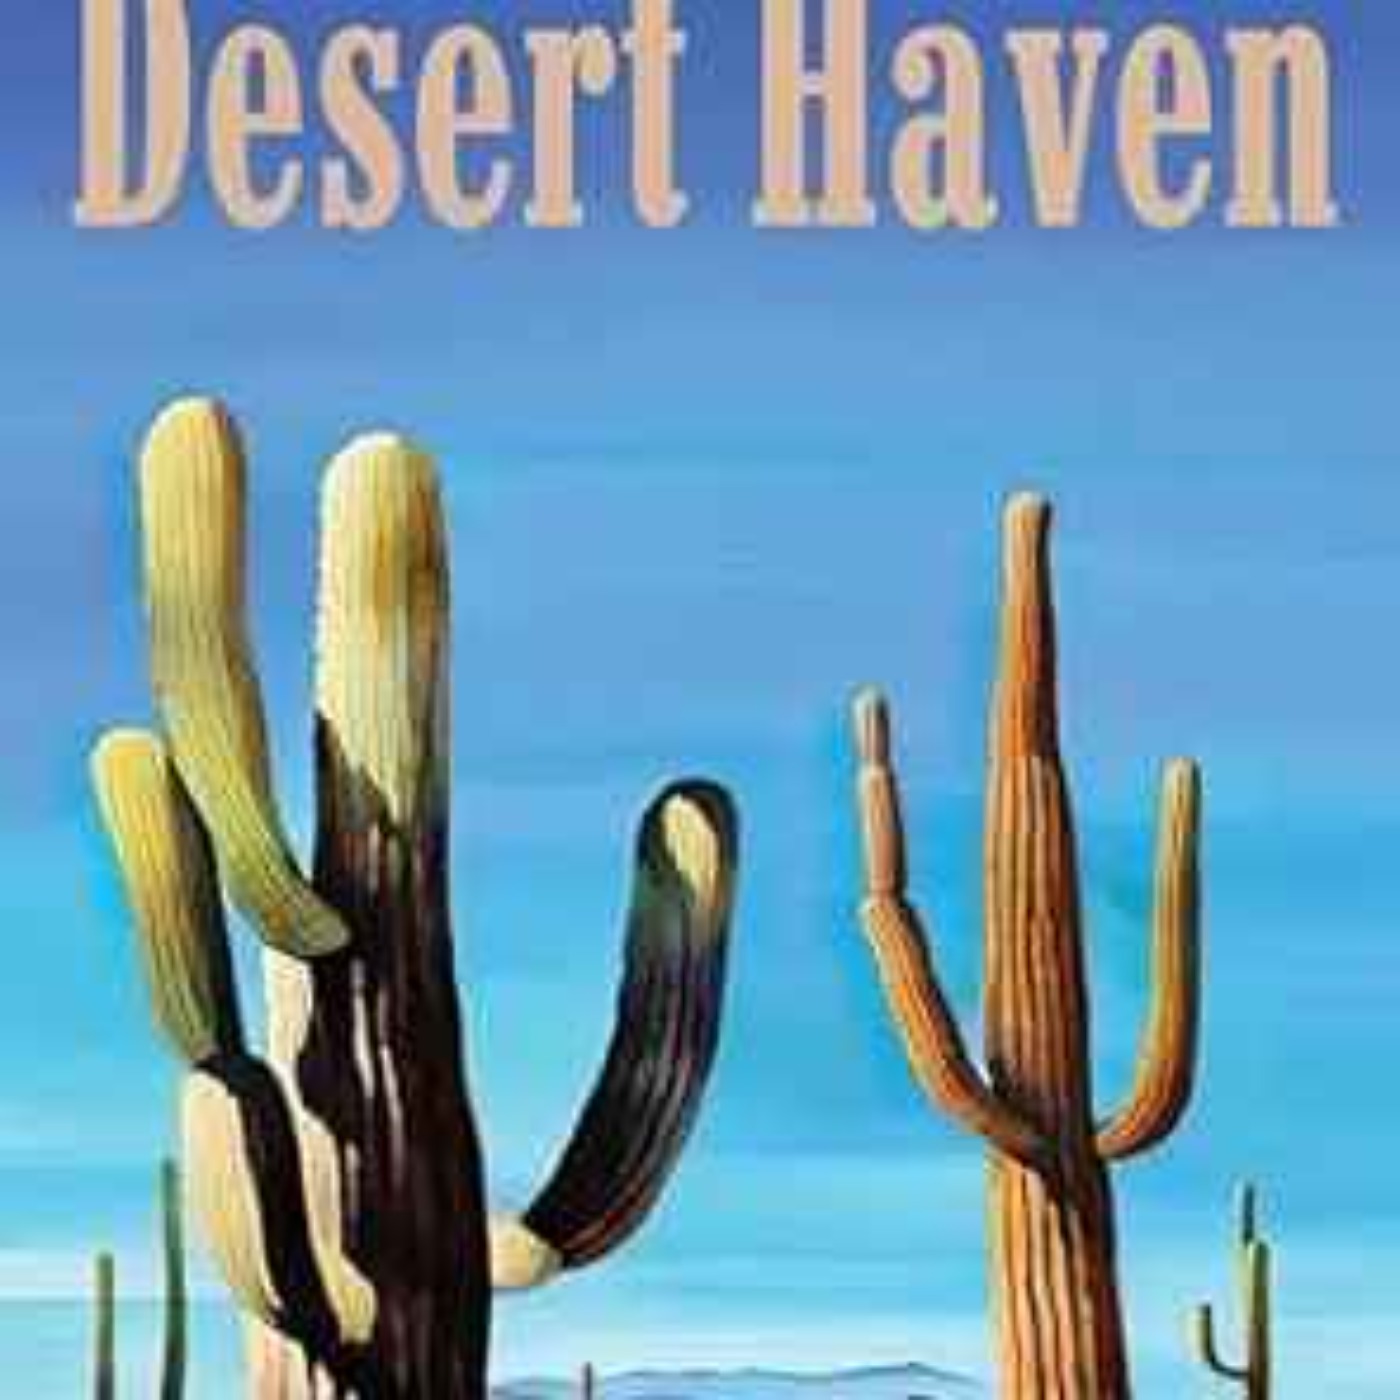 cover art for Penelope Starr - Desert haven